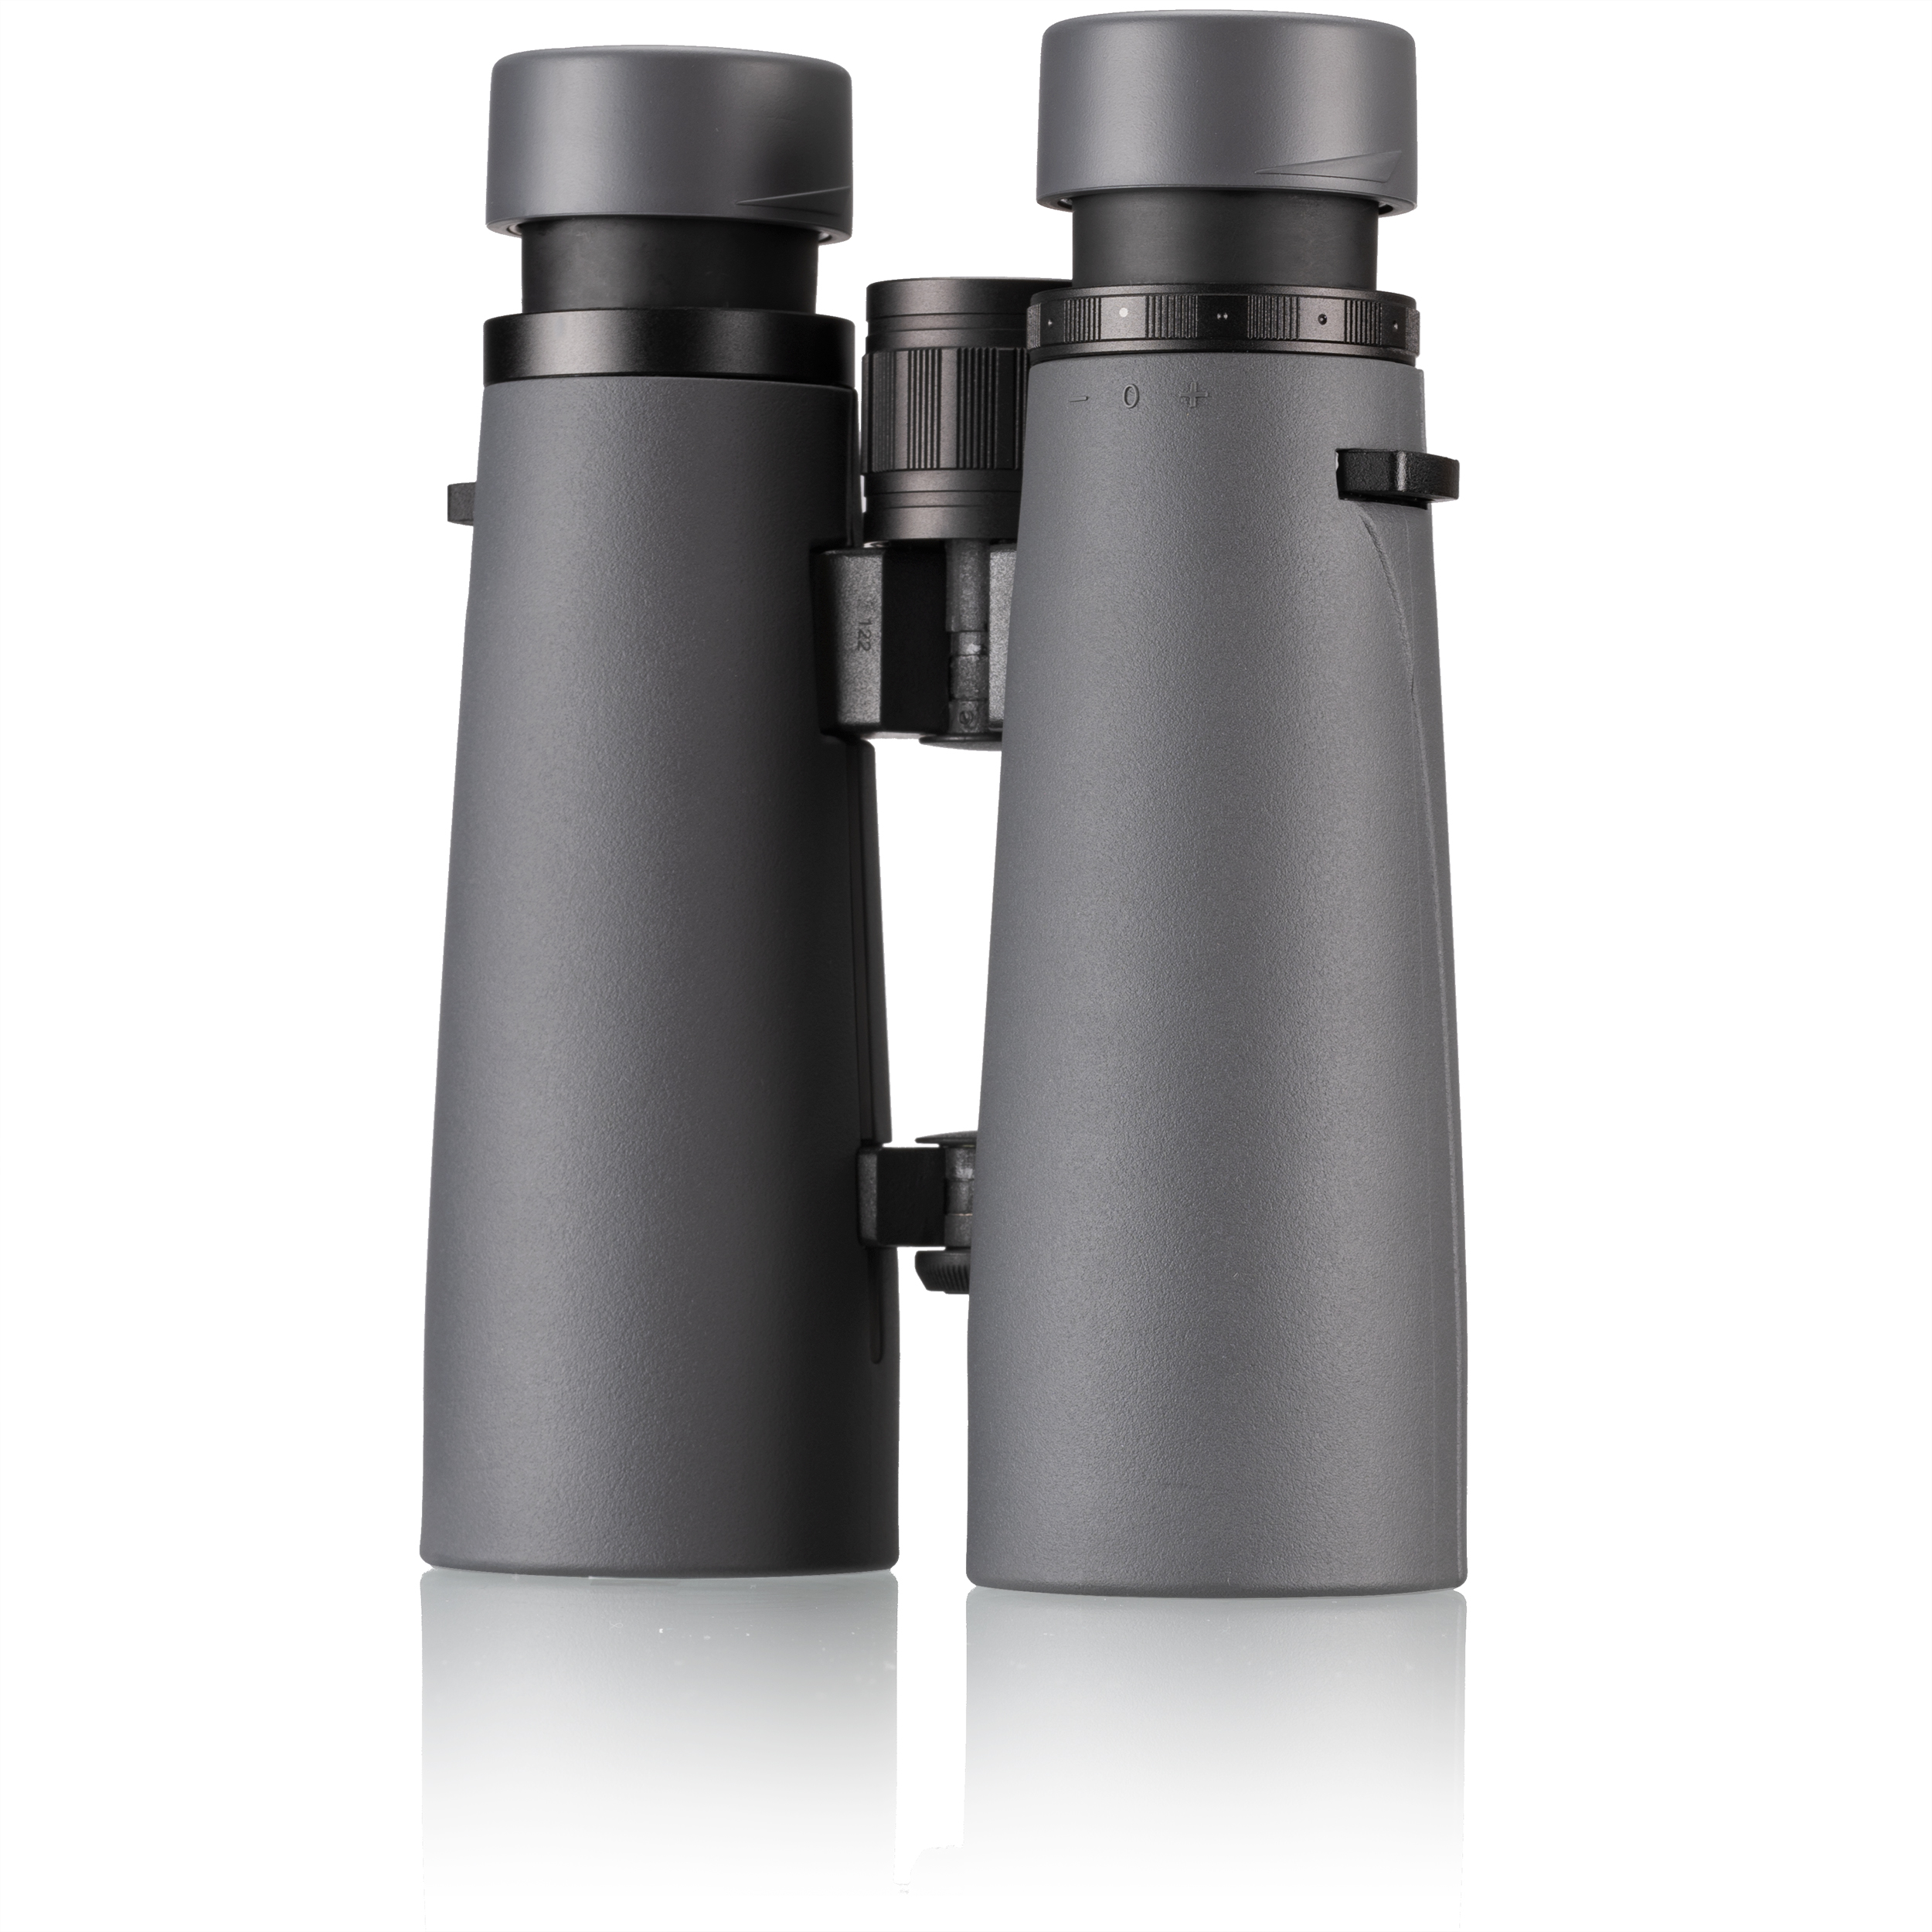 BRESSER Pirsch ED 10x50 Binoculars with Phase Coating